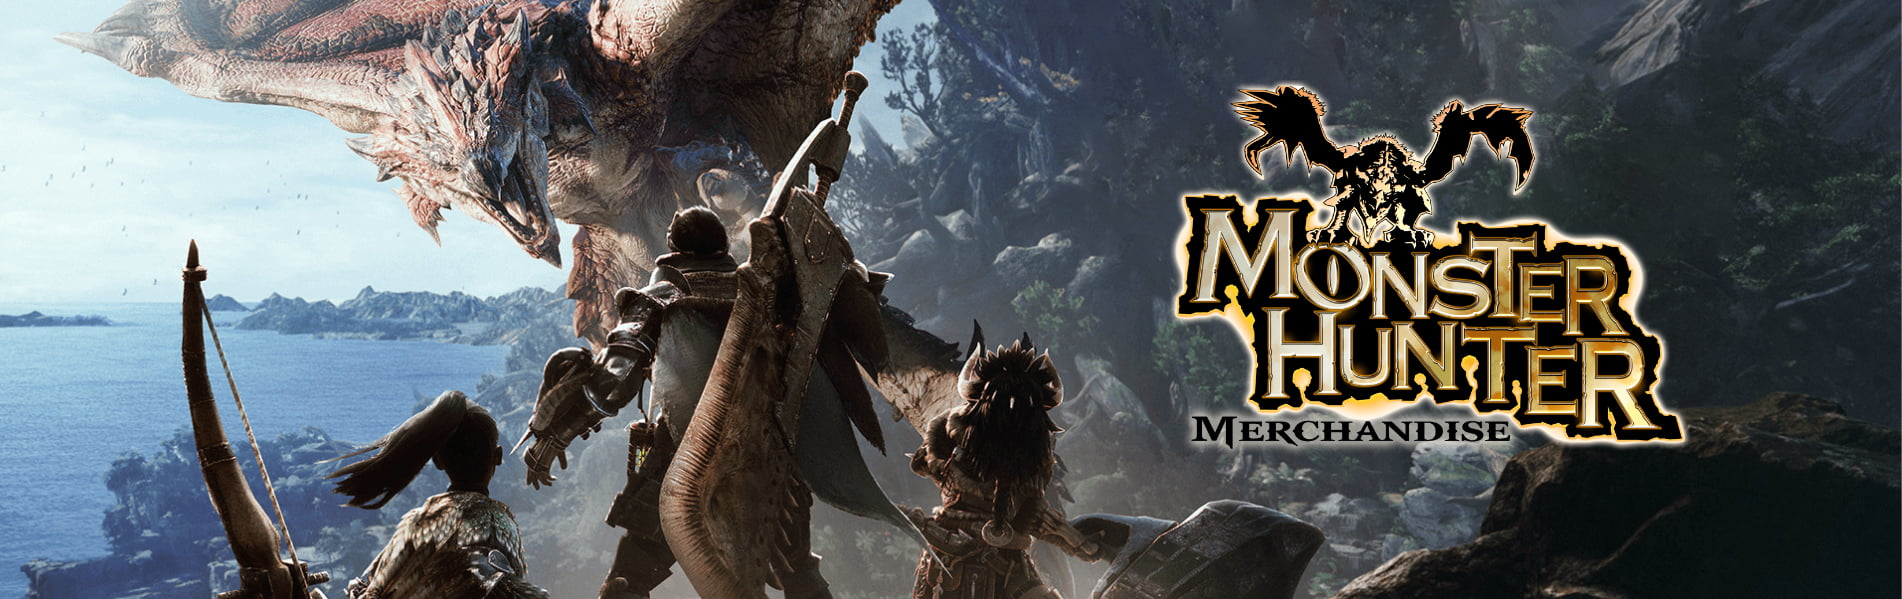 Monster Hunter Merchandise Banner 1